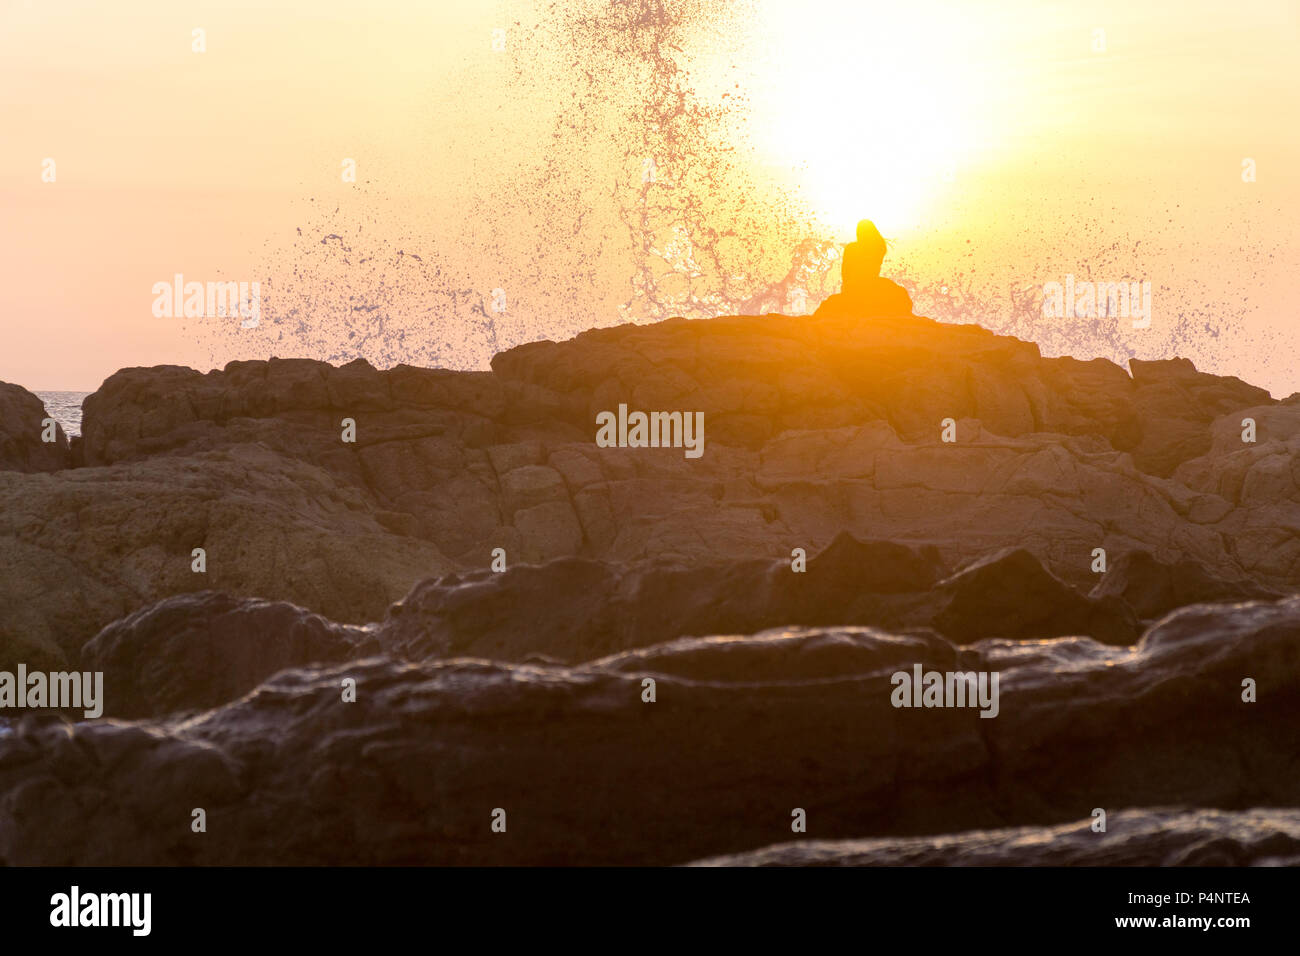 Les femmes assises sur des rochers à la plage avec de grosses vagues. Banque D'Images